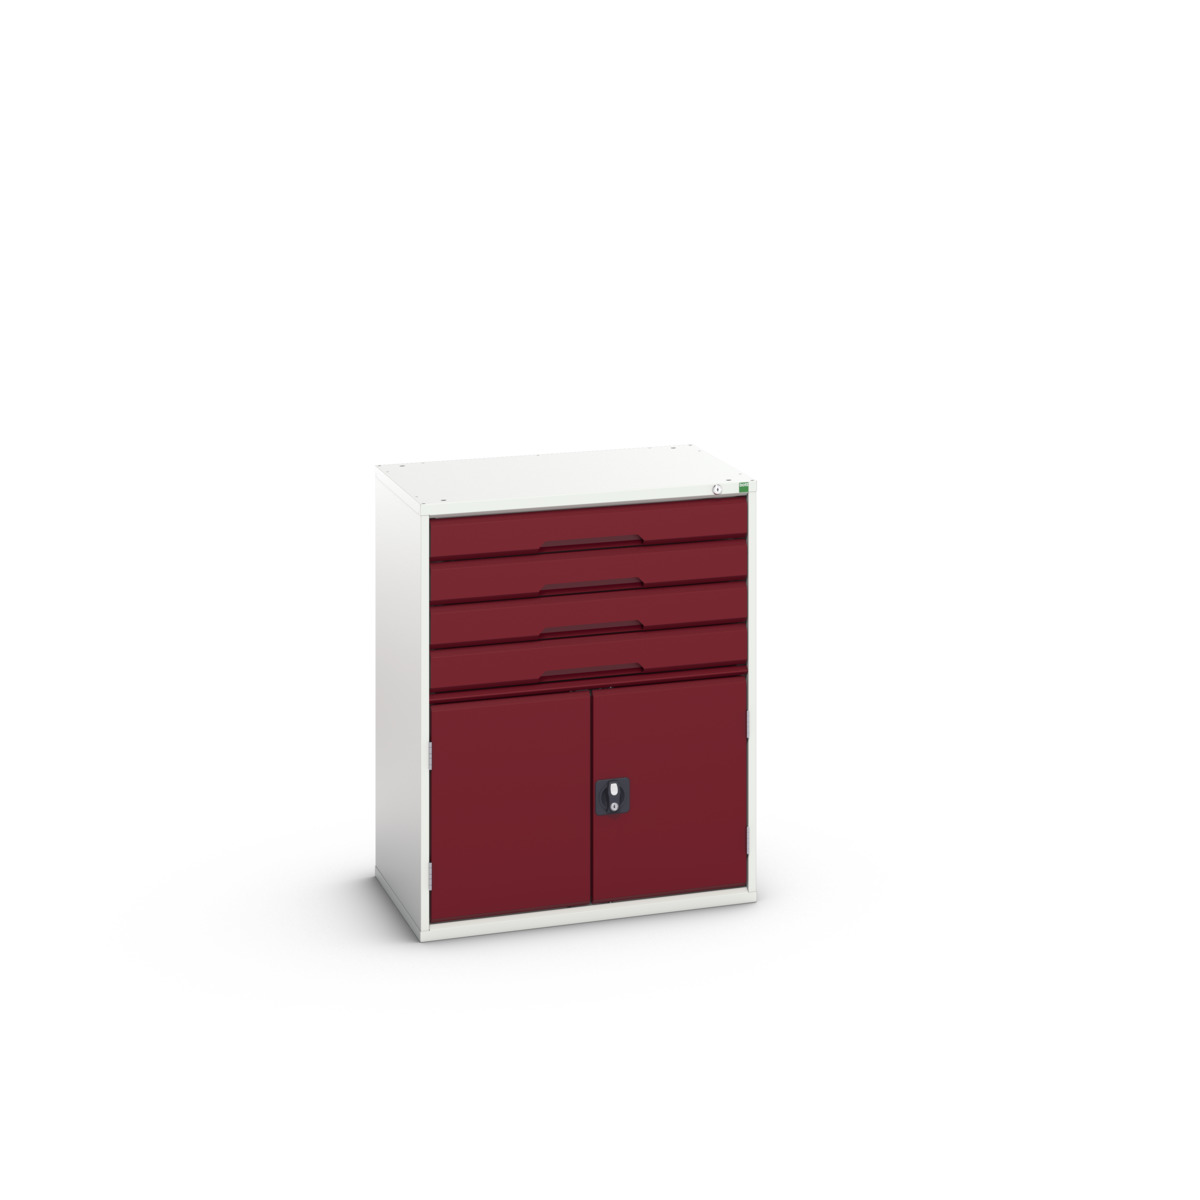 16925465.24 - verso drawer-door cabinet